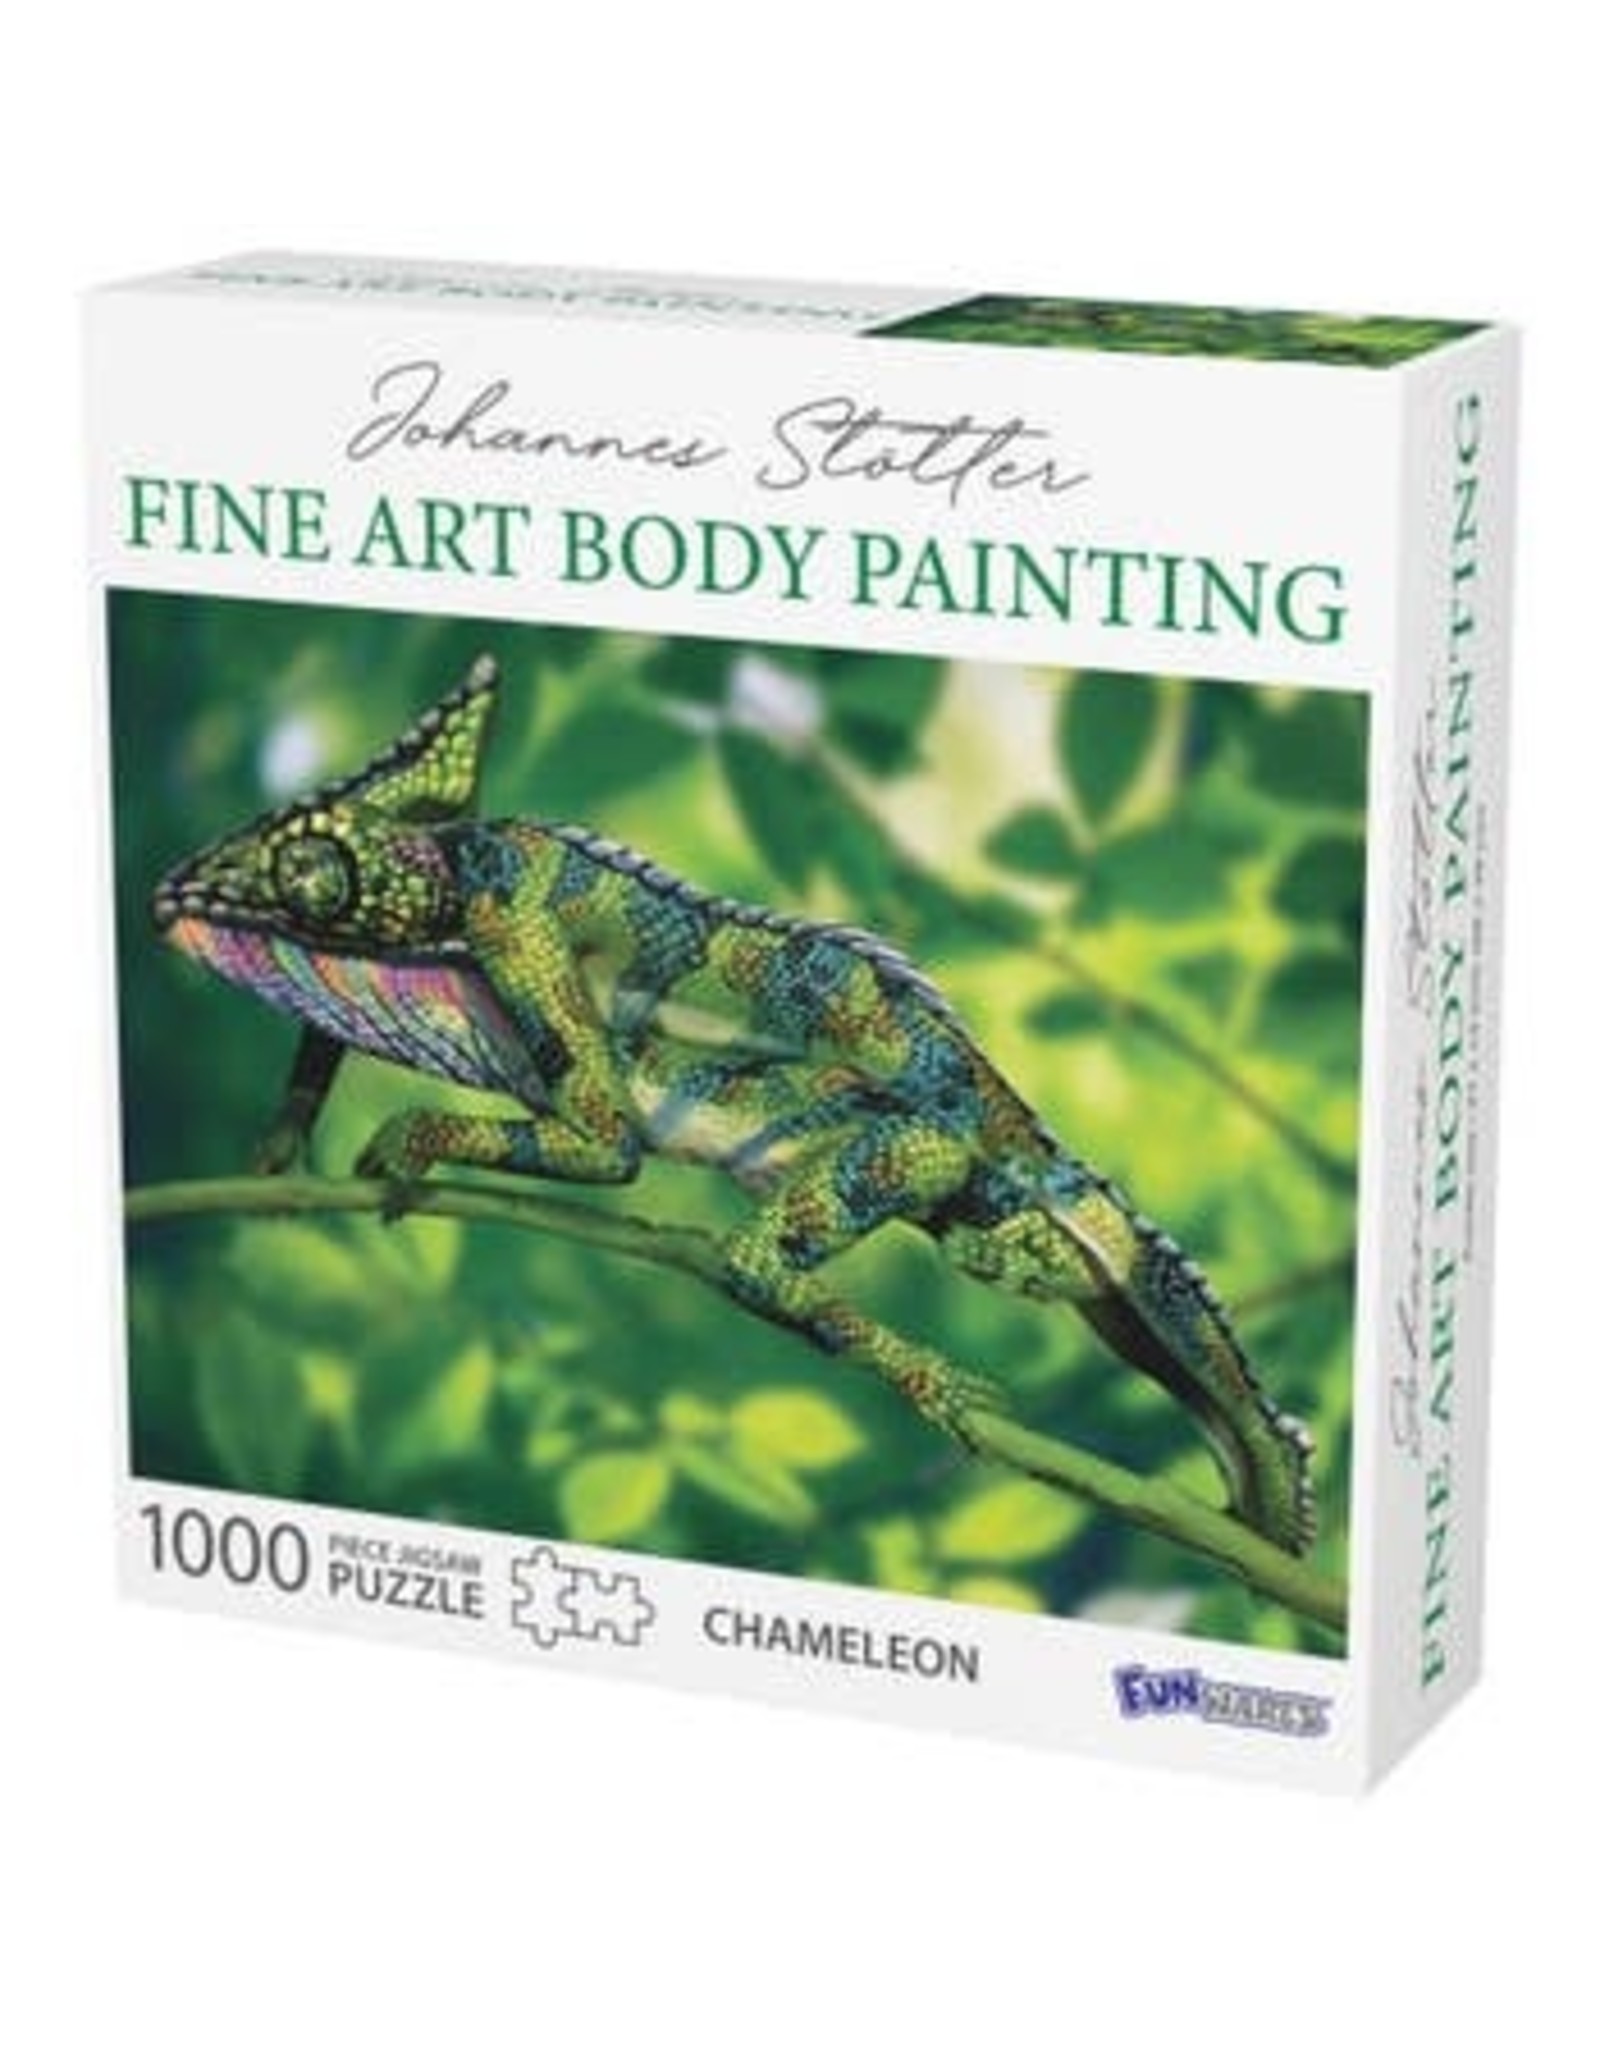 Johannes Stotter Chameleon Body Art 1000 pc